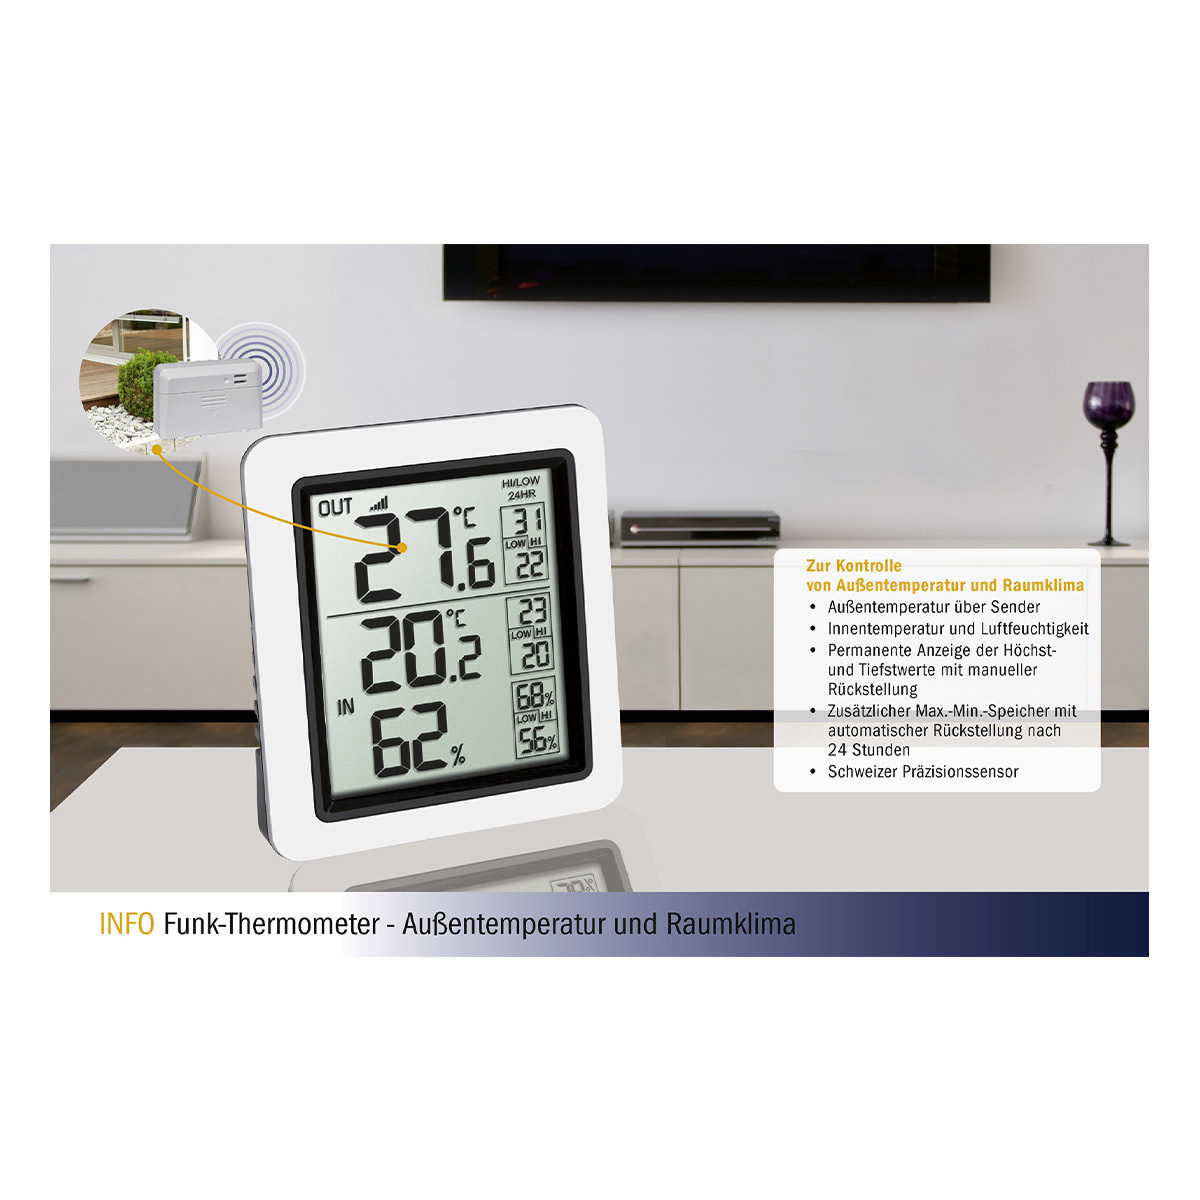 30-3065-02-funk-thermometer-info-vorteile-1200x1200px.jpg